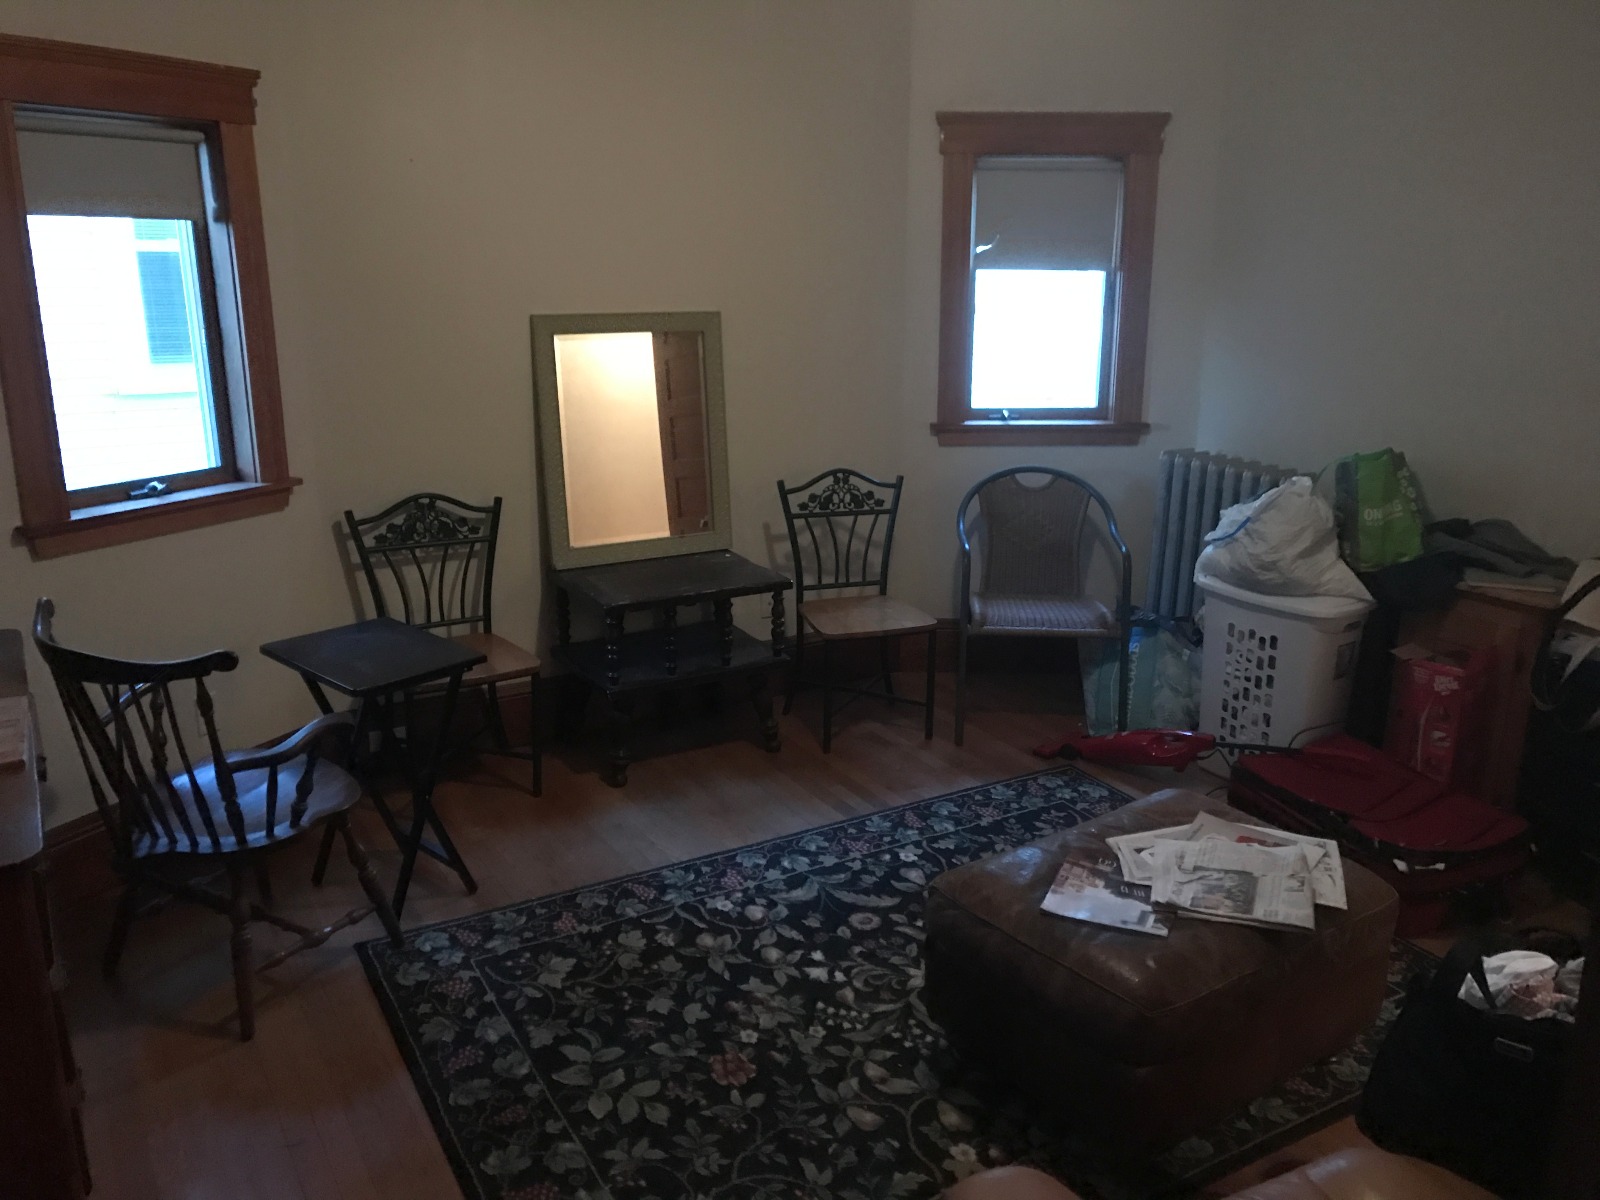 Photos of apartment on Boston,Medford MA 02155